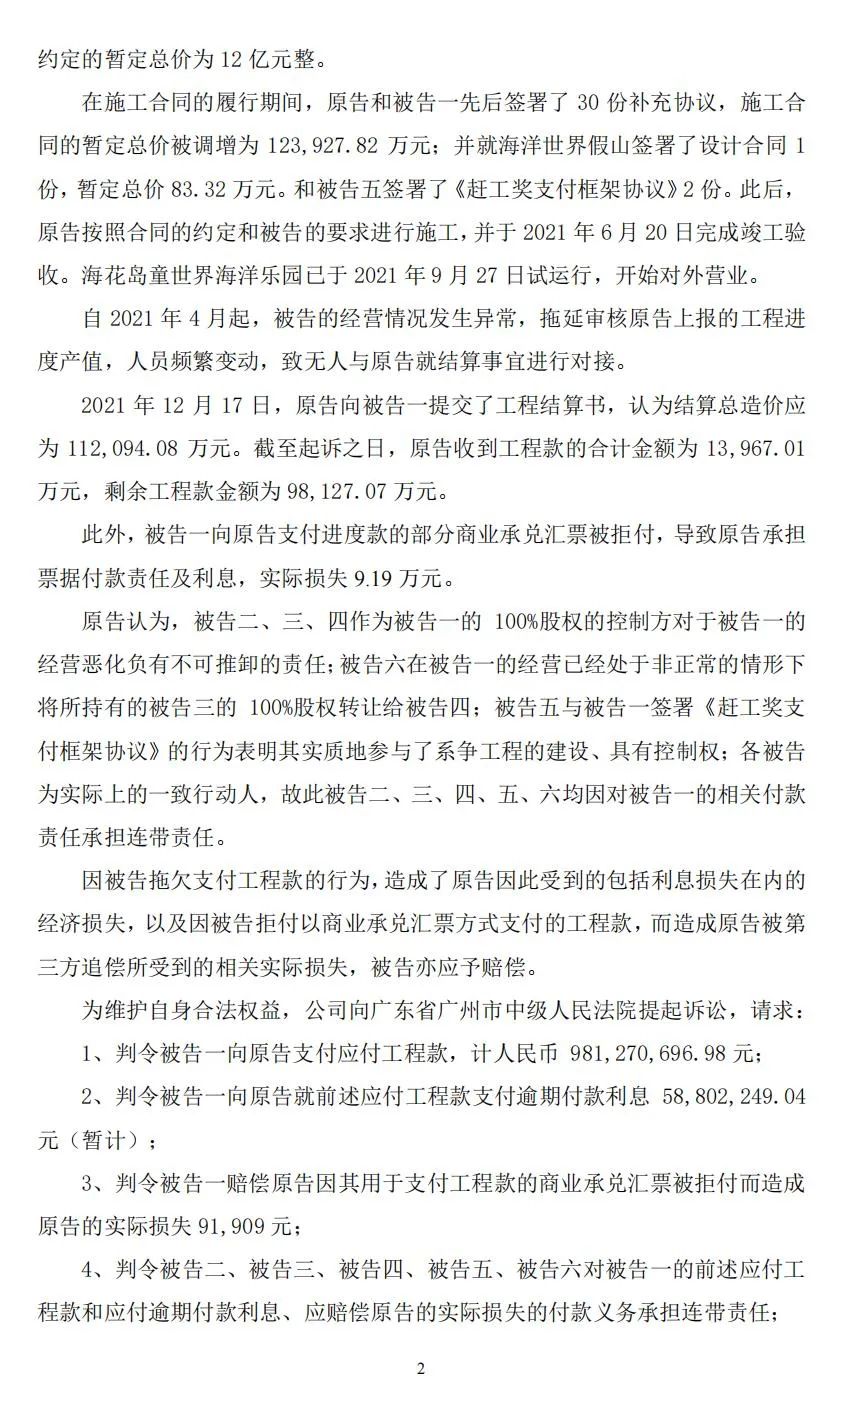 上海建工起诉恒大旗下公司，涉及海花岛逾期工程款约10.4亿元